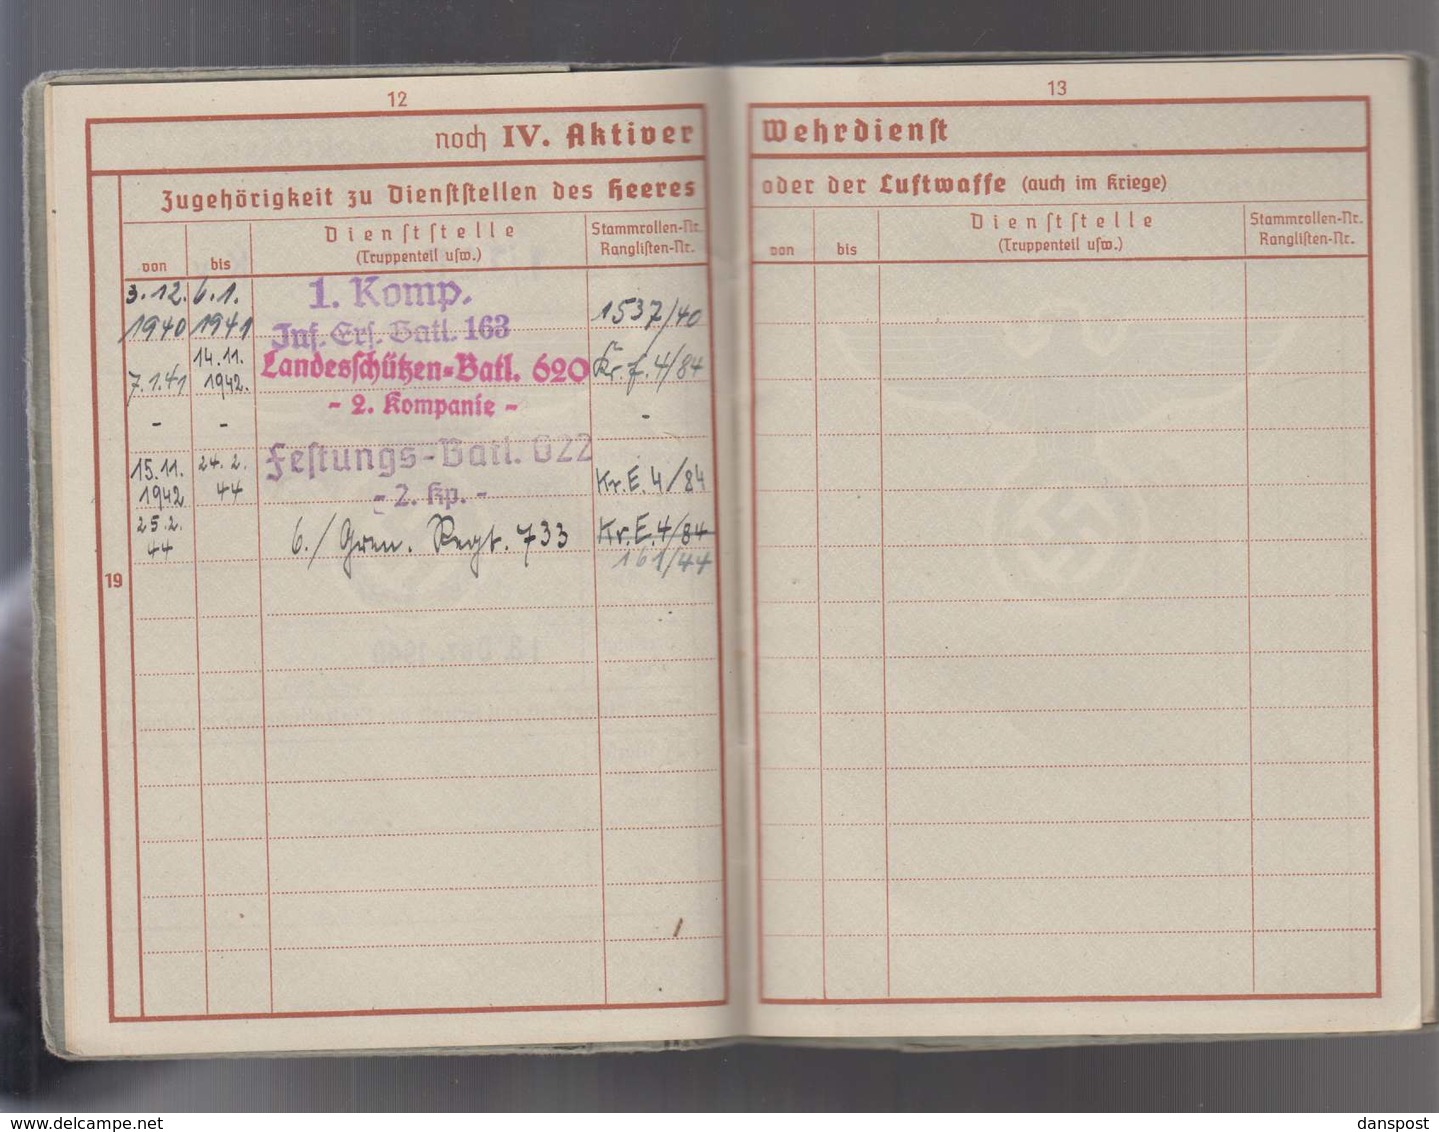 DR Wehrpass 2. WK Obergefreiter Kreta Malariakrank ausgestellt Frankfurt 16.04.1940 viele Einträge bis Okt 1944!